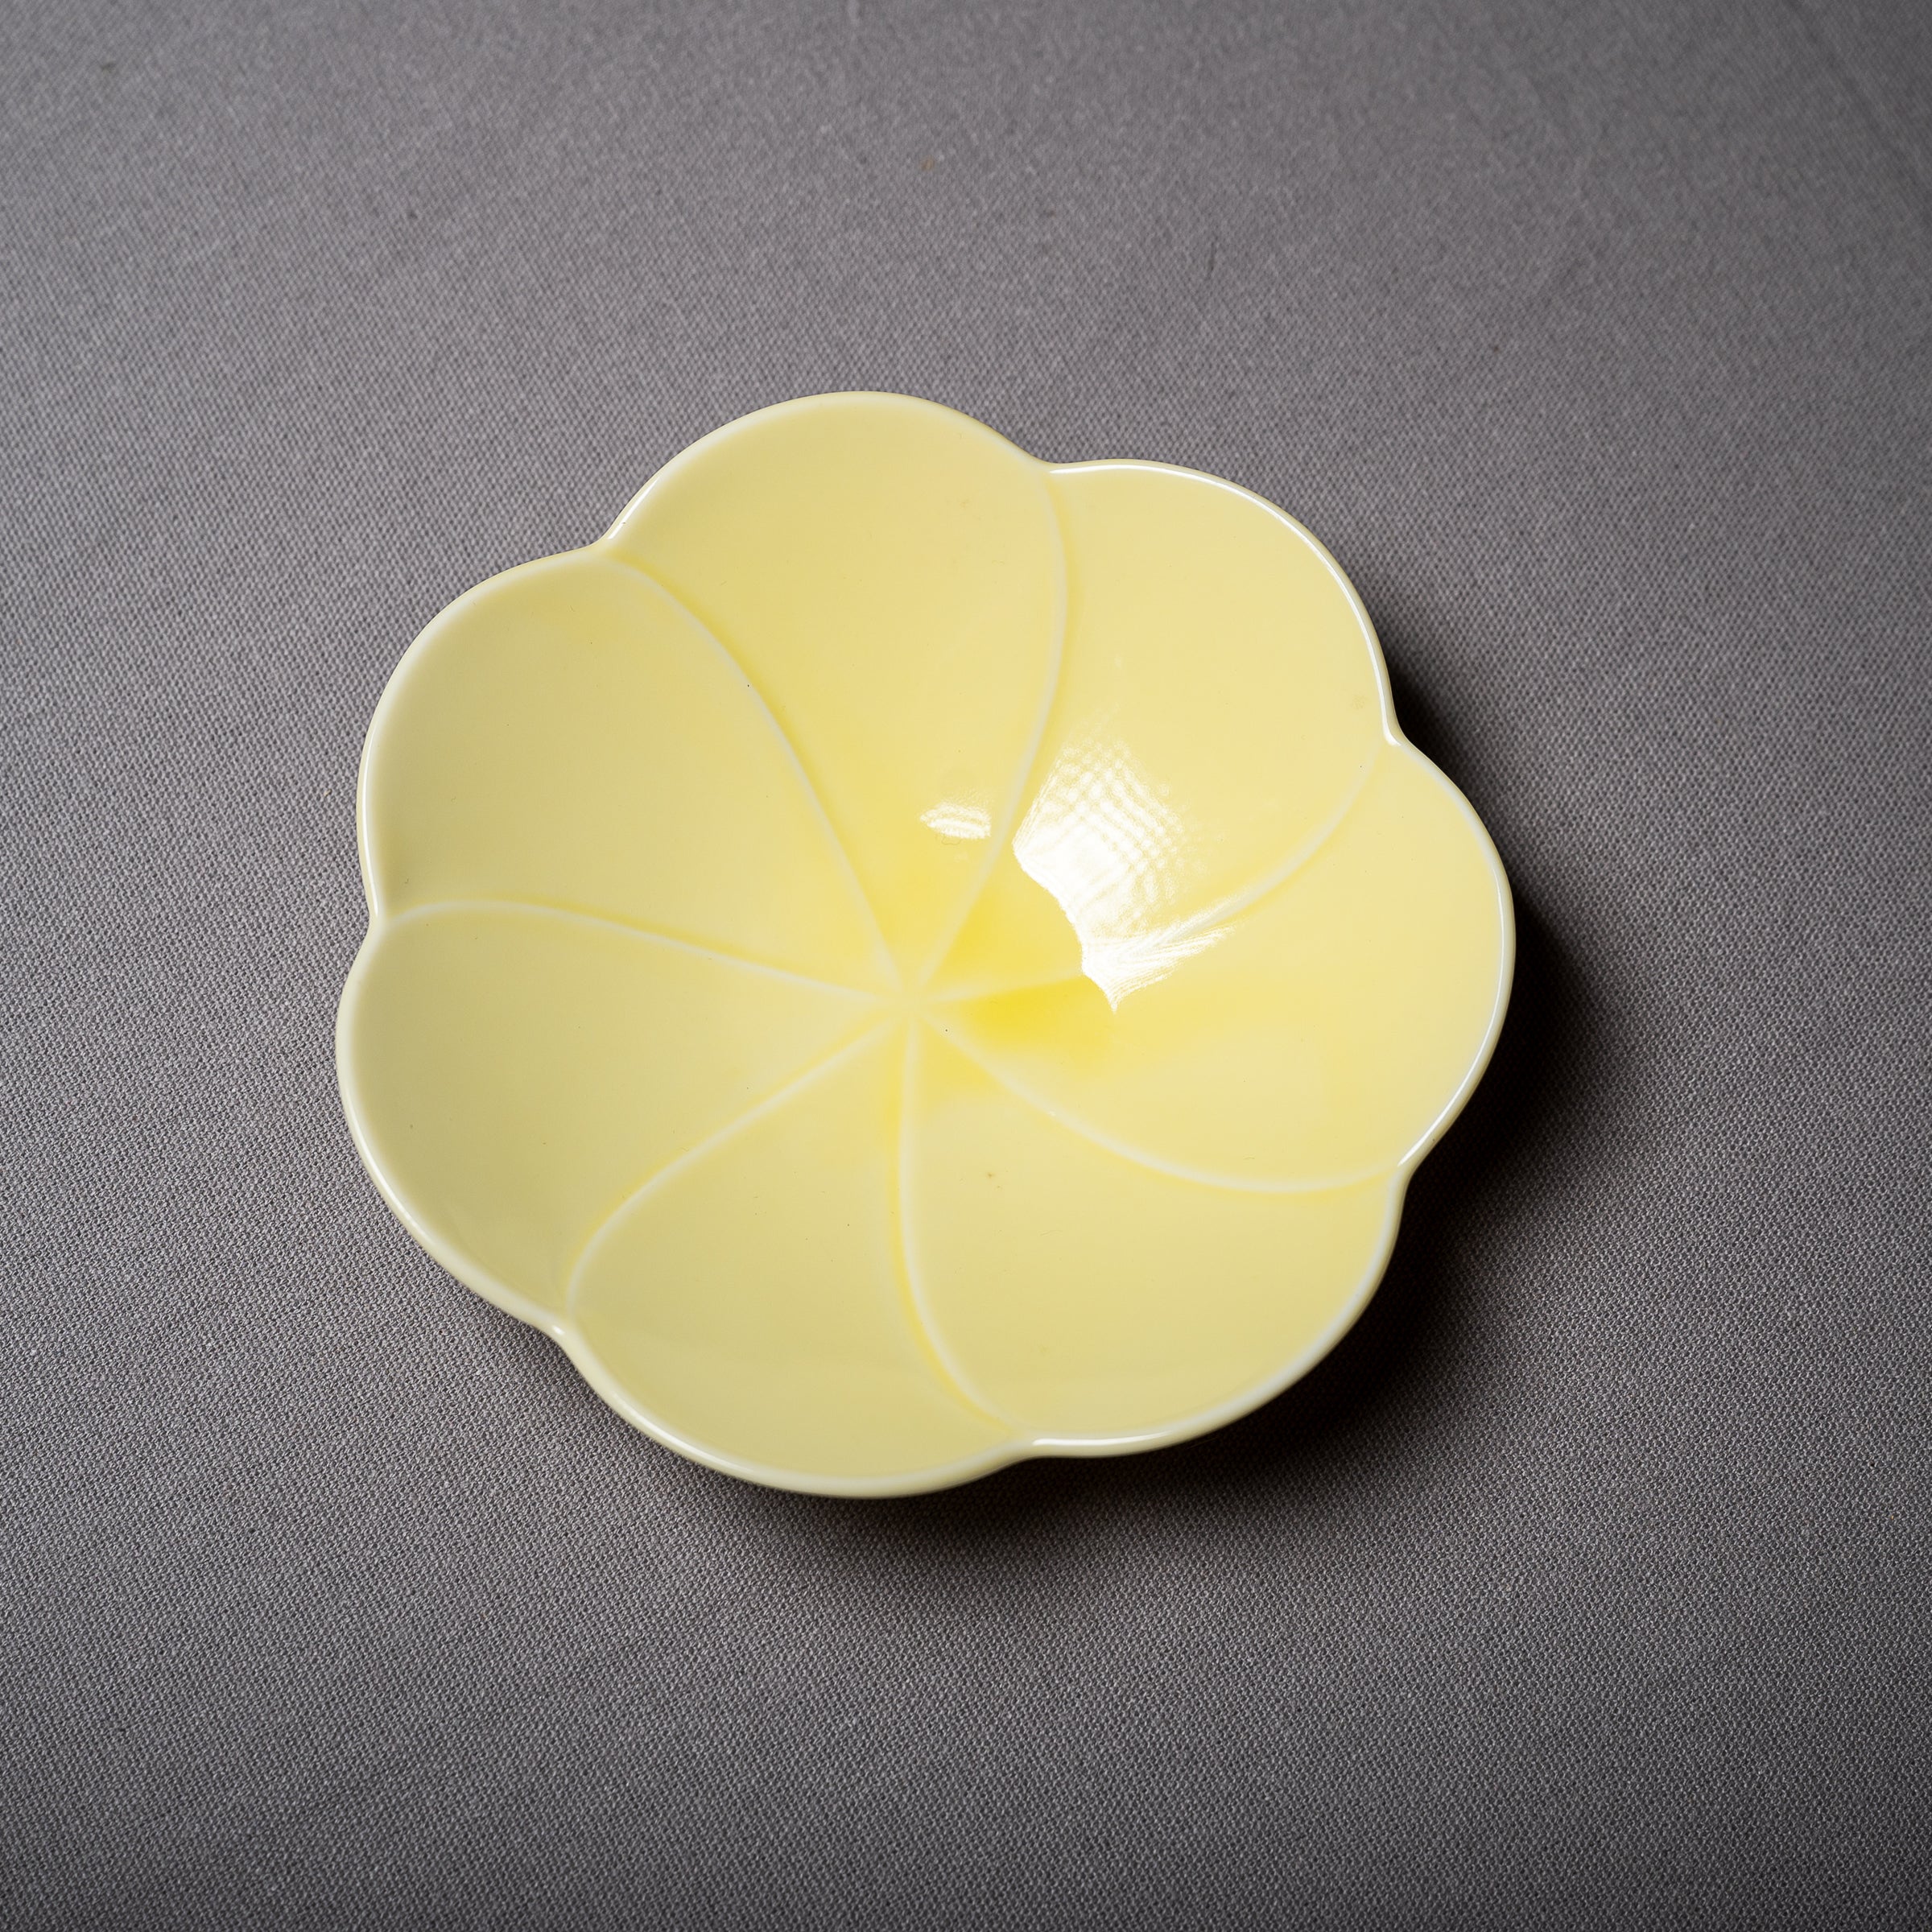 Flower Serving Bowl 15.7 cm - Hollyhock Light Yellow / 小田陶器 コトハナ 立葵